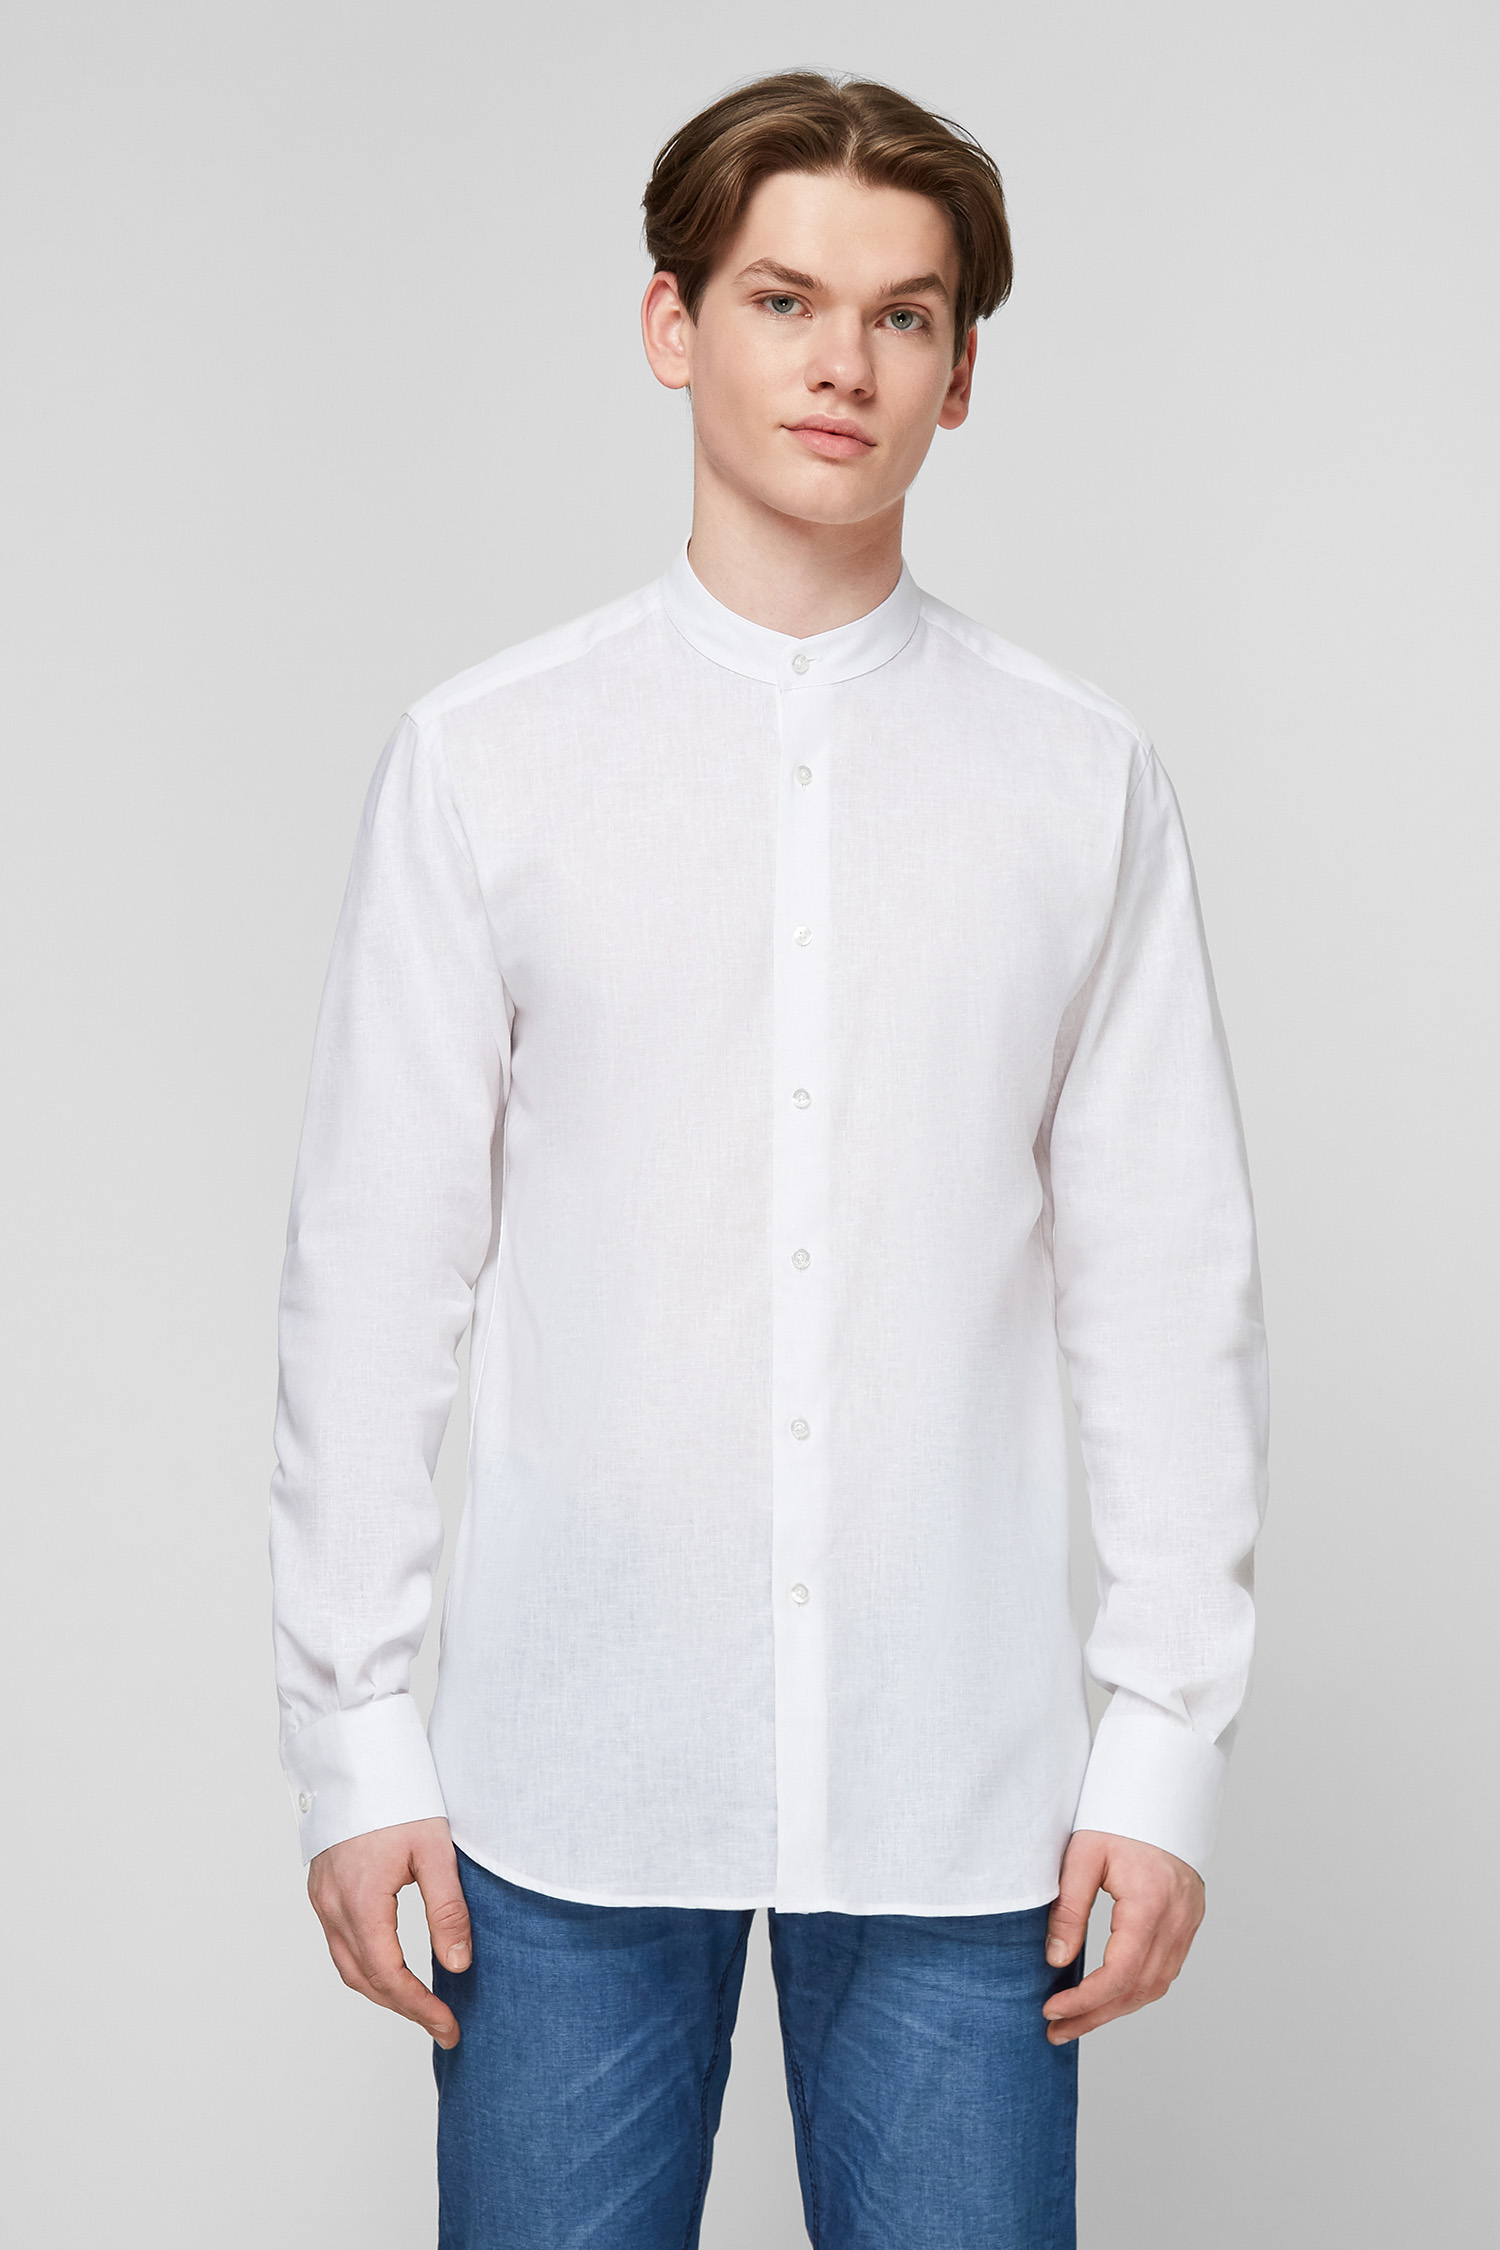 Біла лляна сорочка для хлопців Karl Lagerfeld 511628.605035;10